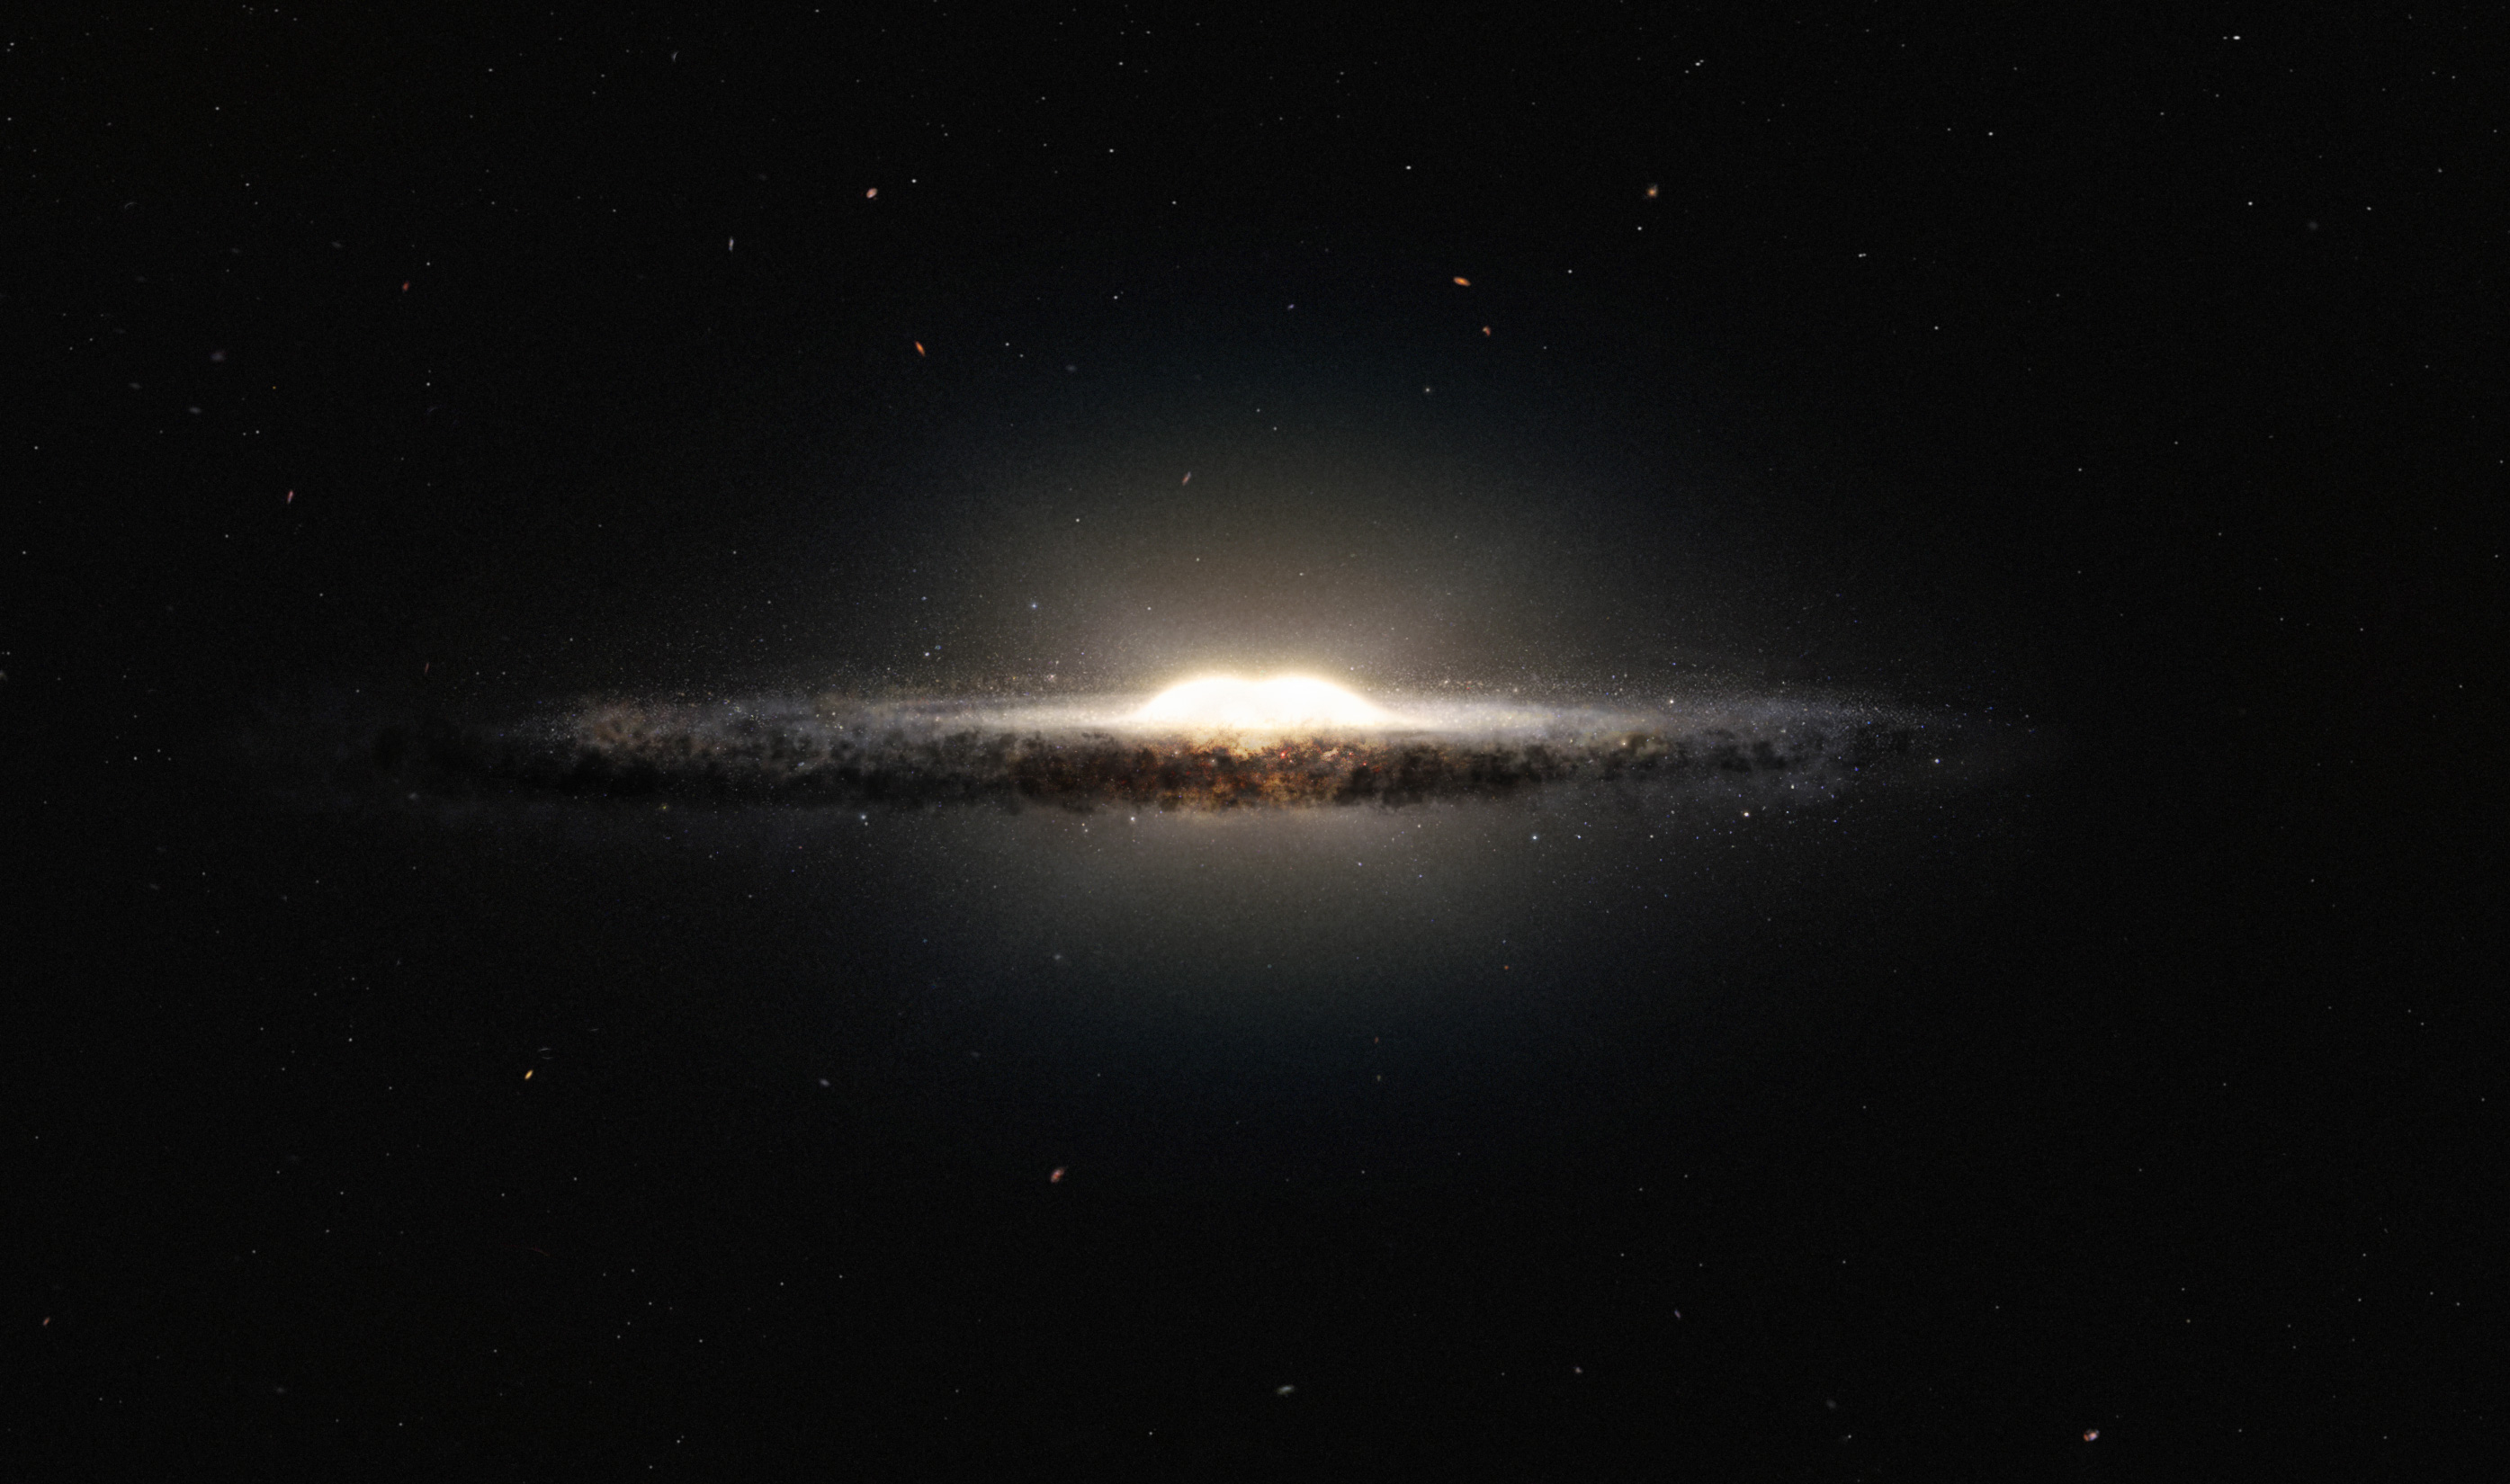 Galaxy - Wikipedia